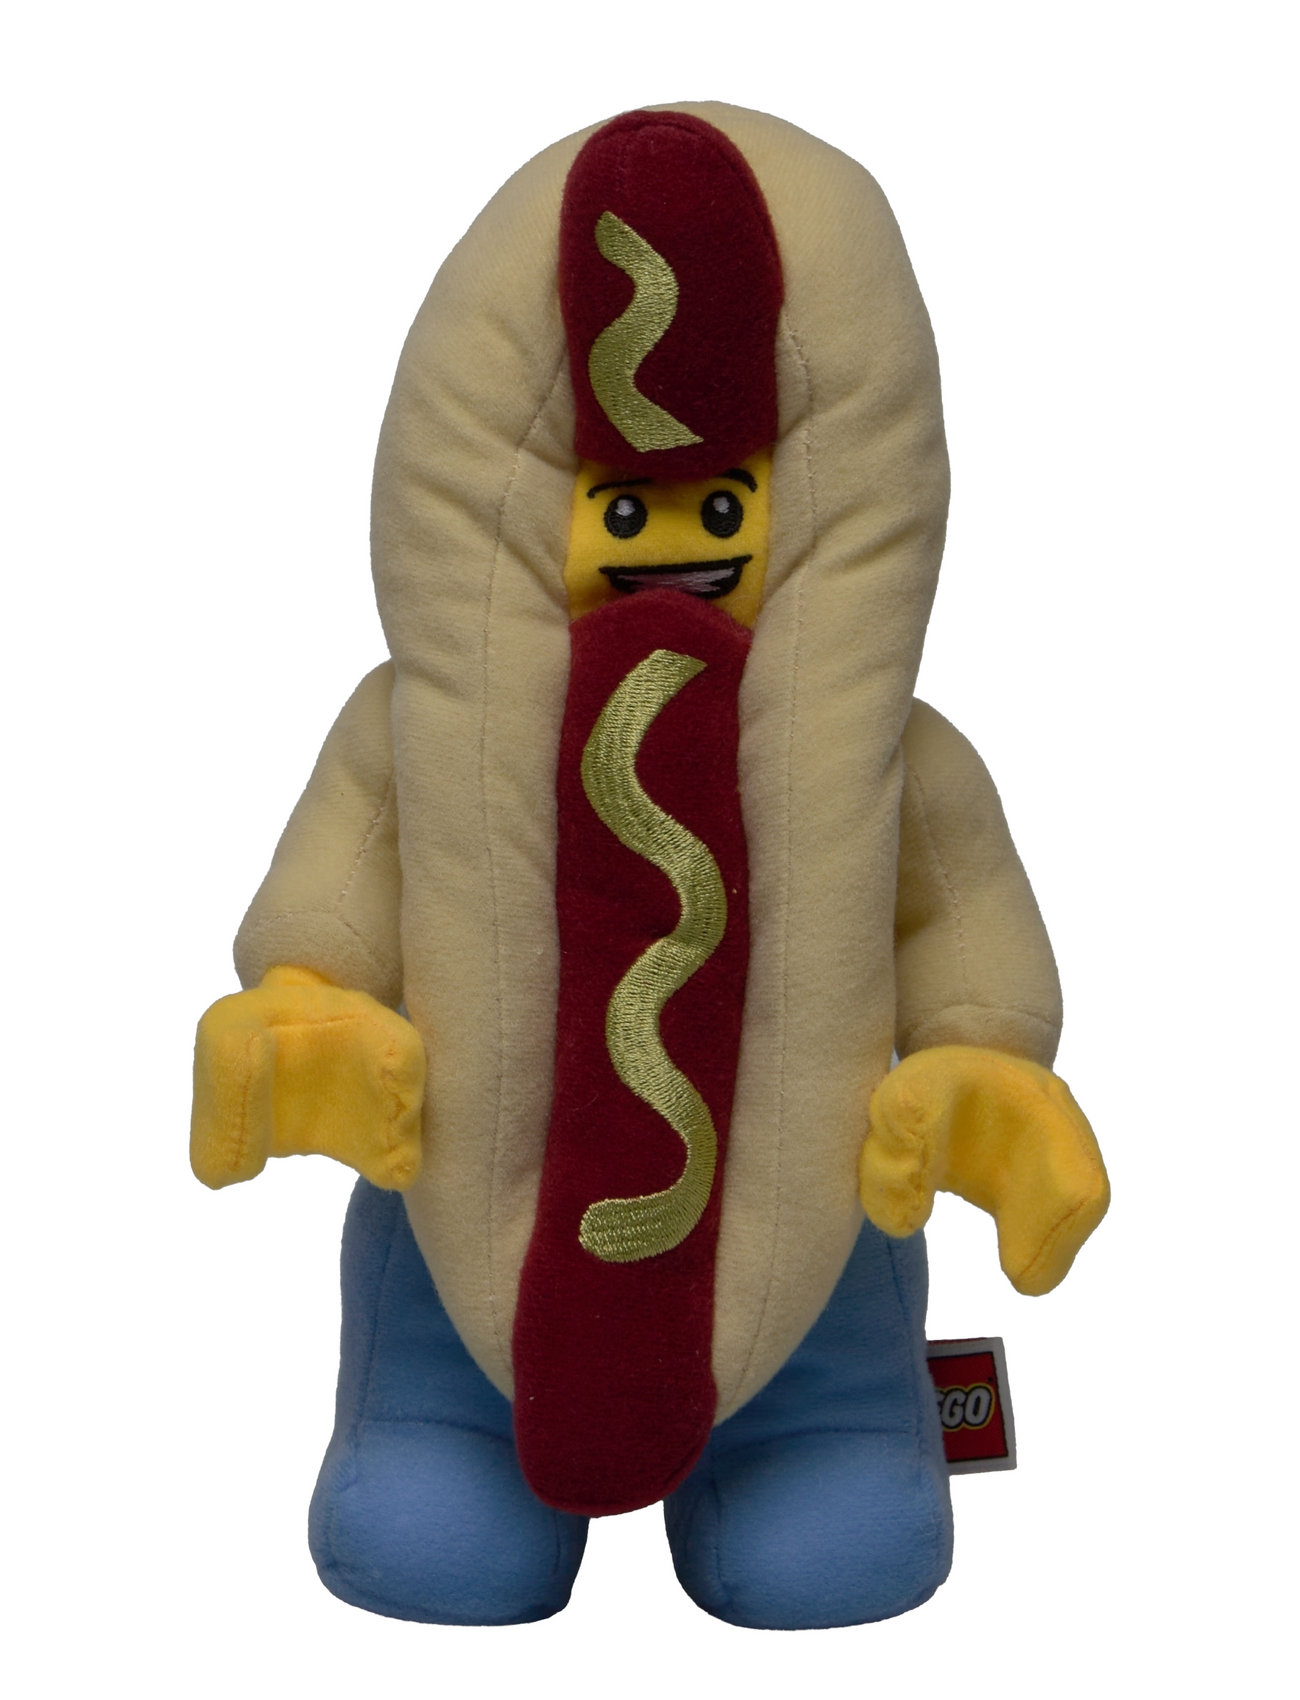 Lego Hot Dog, Small Toys Soft Toys Stuffed Toys Multi/patterned LEGO